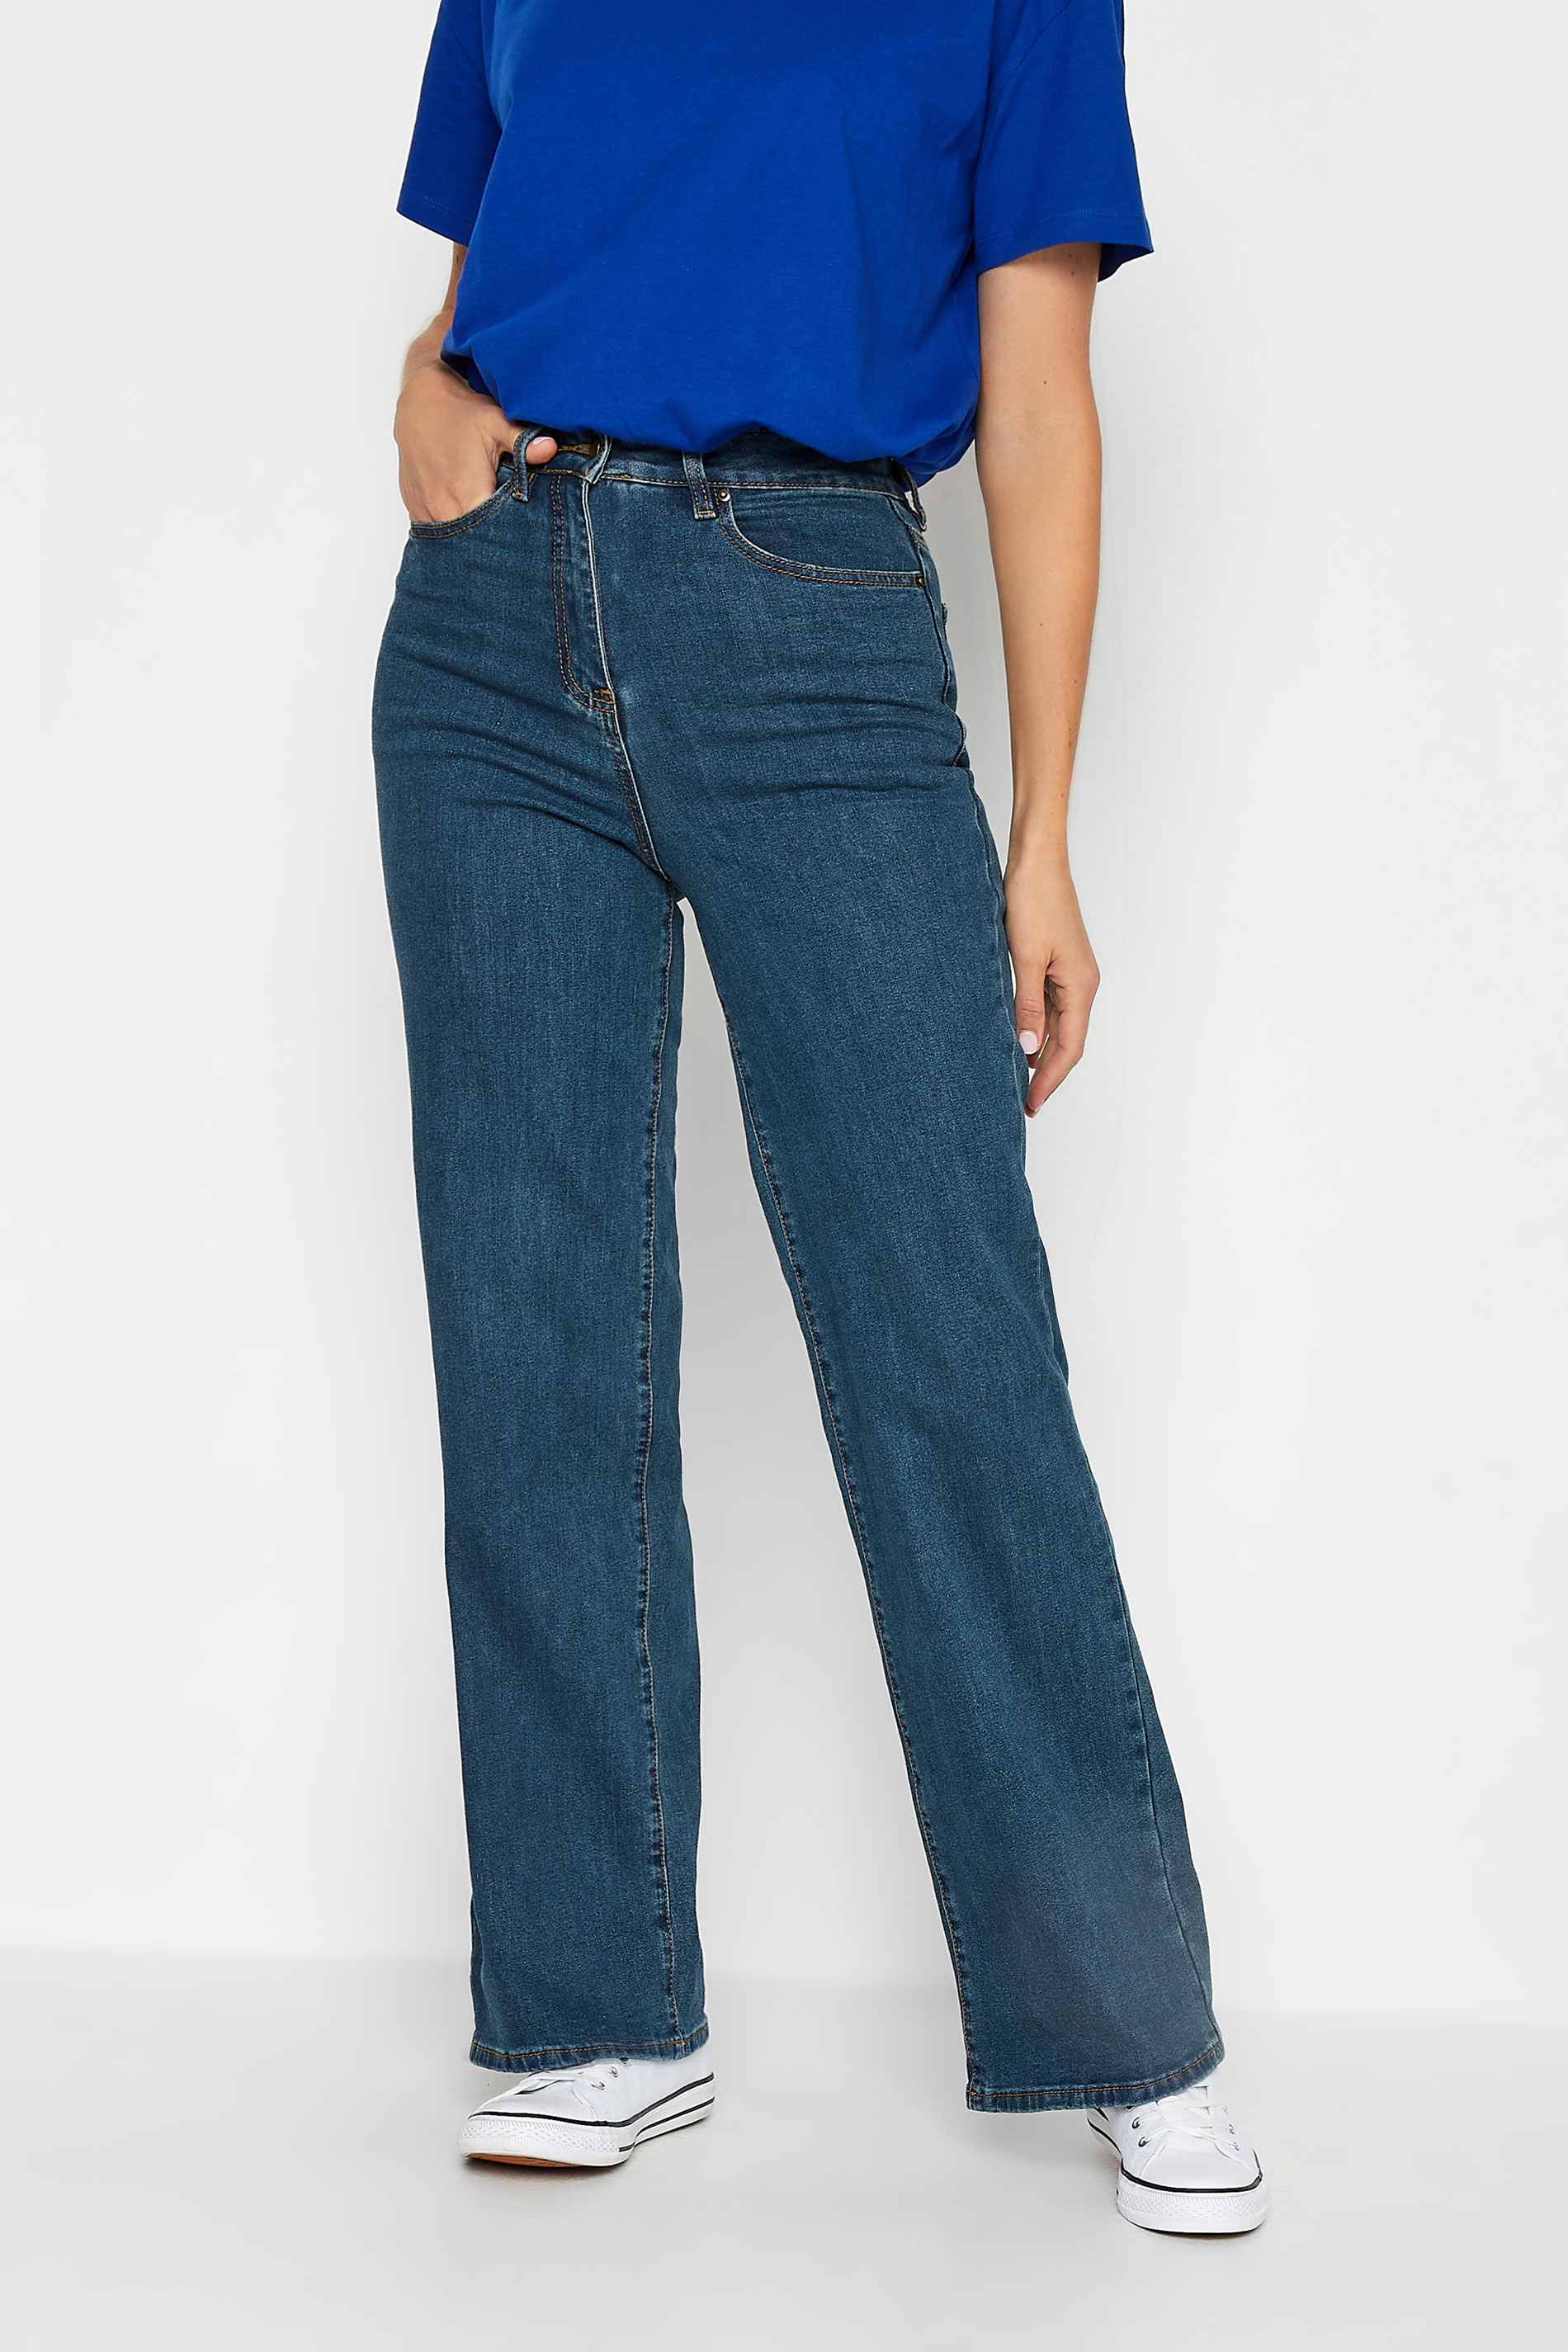 LTS Tall Indigo Blue BEA Wide Leg Jeans | Long Tall Sally 3